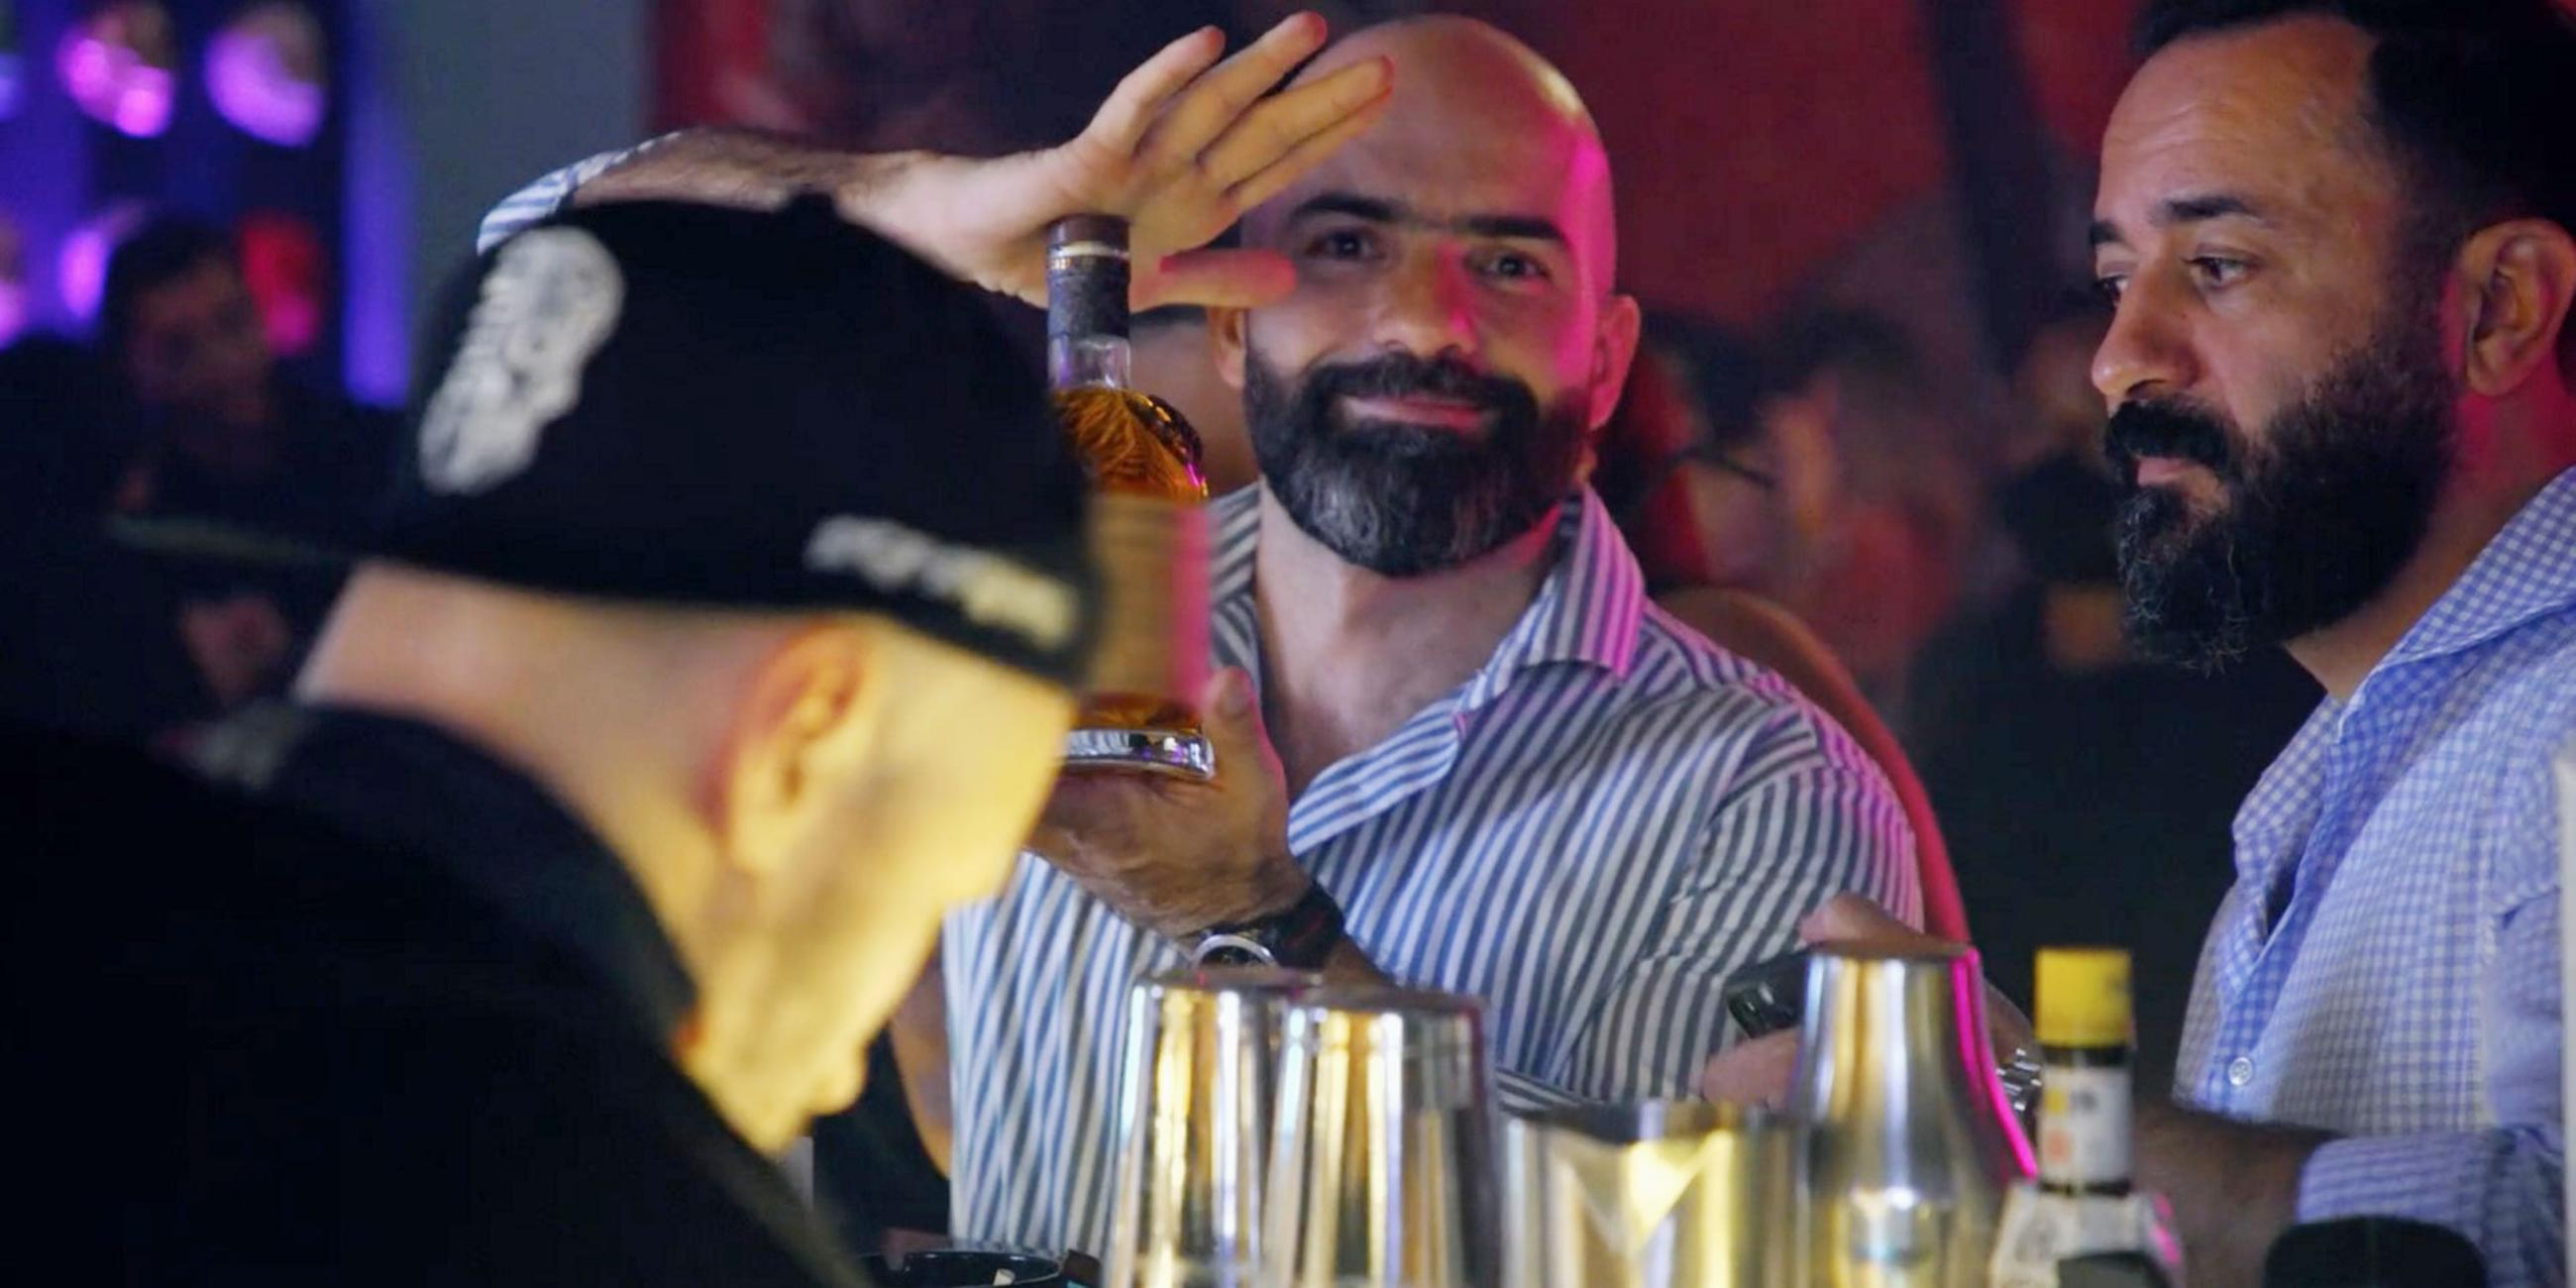 Drei Männer an einer Bar. Der bärtige Mann in der Mitte blickt direkt in die Kamera und präsentiert mit beiden Händen eine Flasche mit einem alkoholischen Getränk.